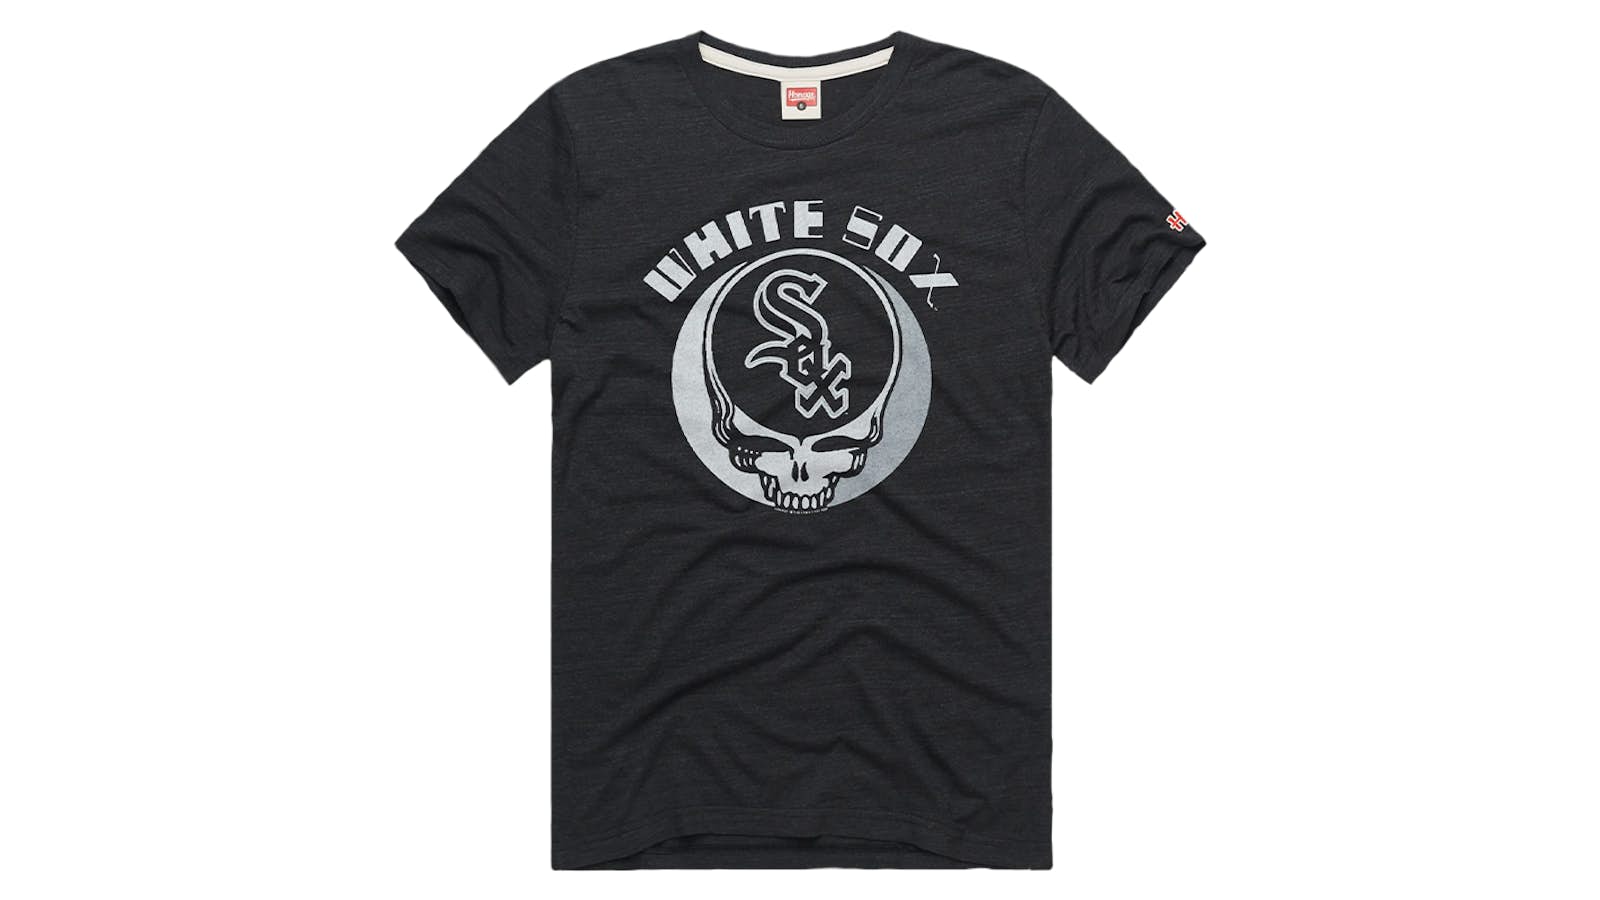 Grateful Dead Homage White Sox T-Shirt